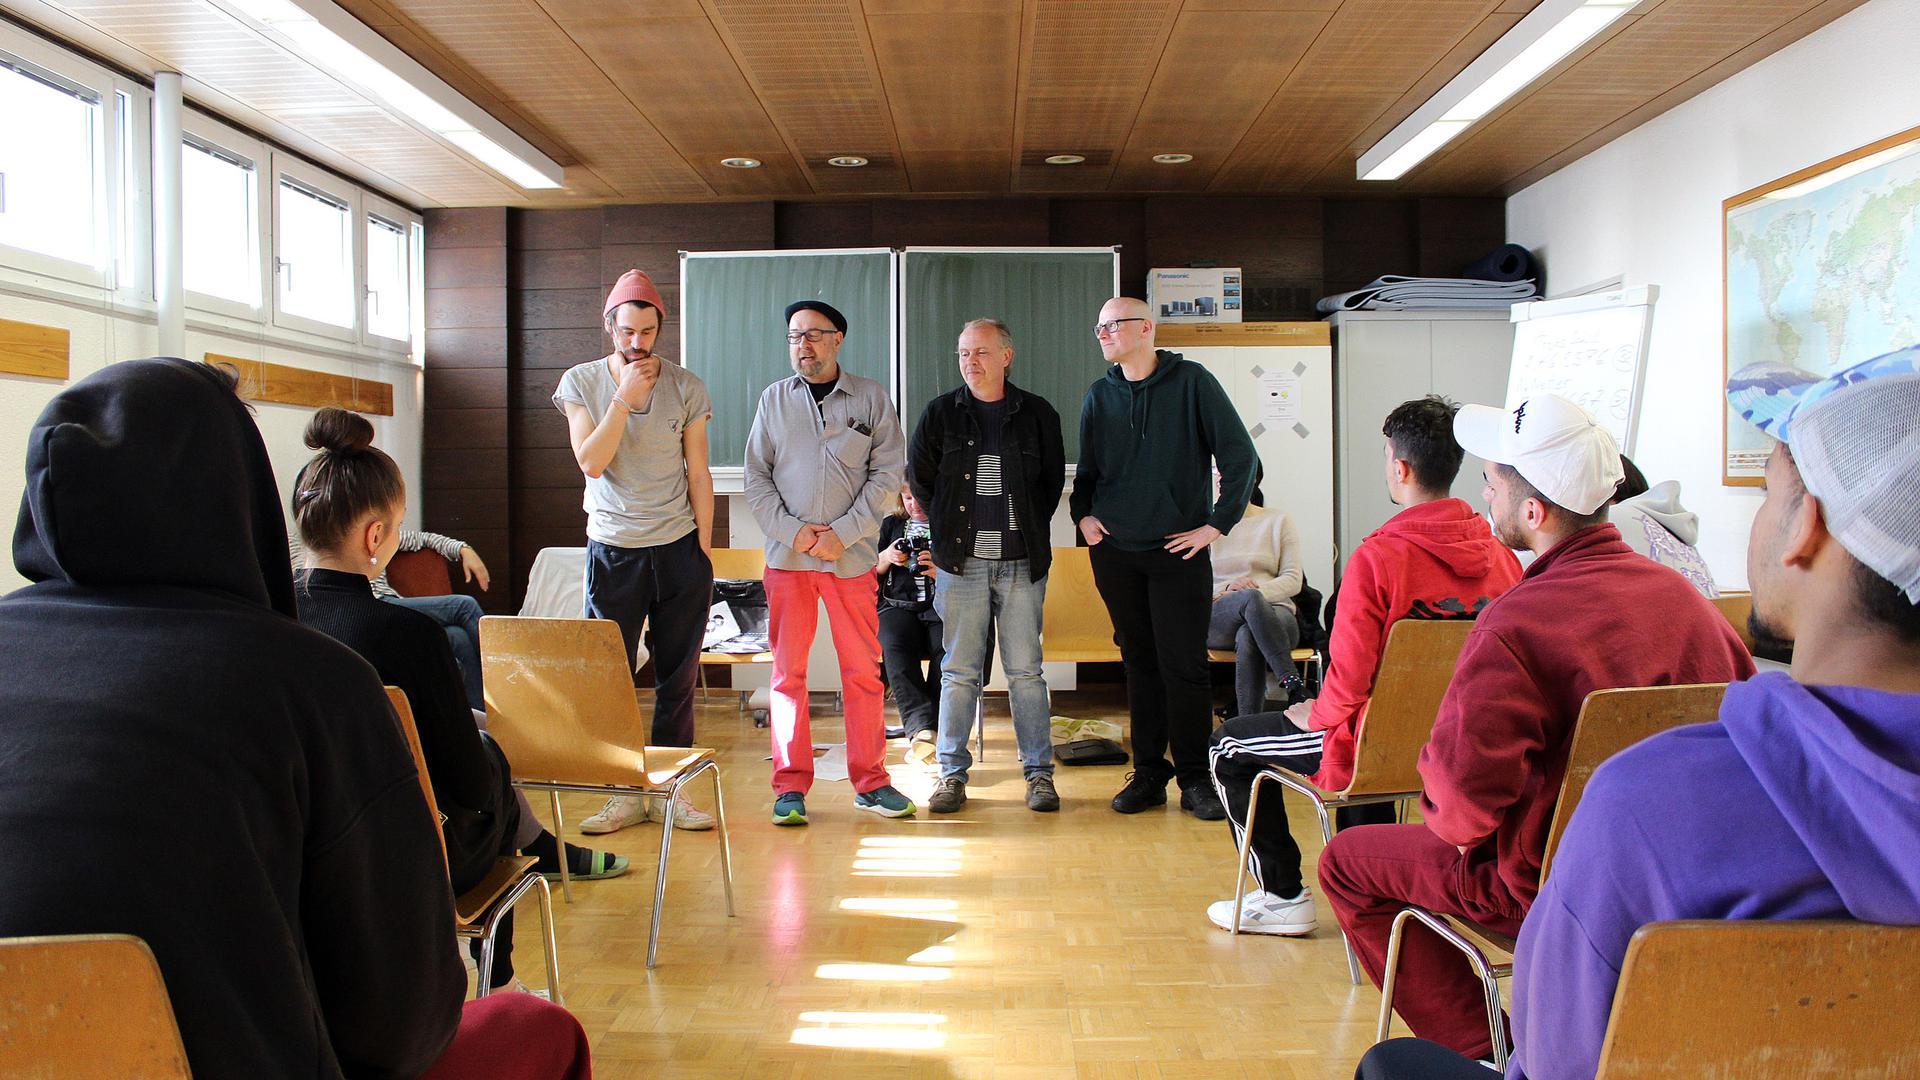 Erster Poetry Slam in der Arrestanstalt: Organisator Rolf Suter, der Mann mit roter Hose, präsentiert die Finalisten Tobias Schill, Wolfgang Wetter und Lars Sörensen, von links.